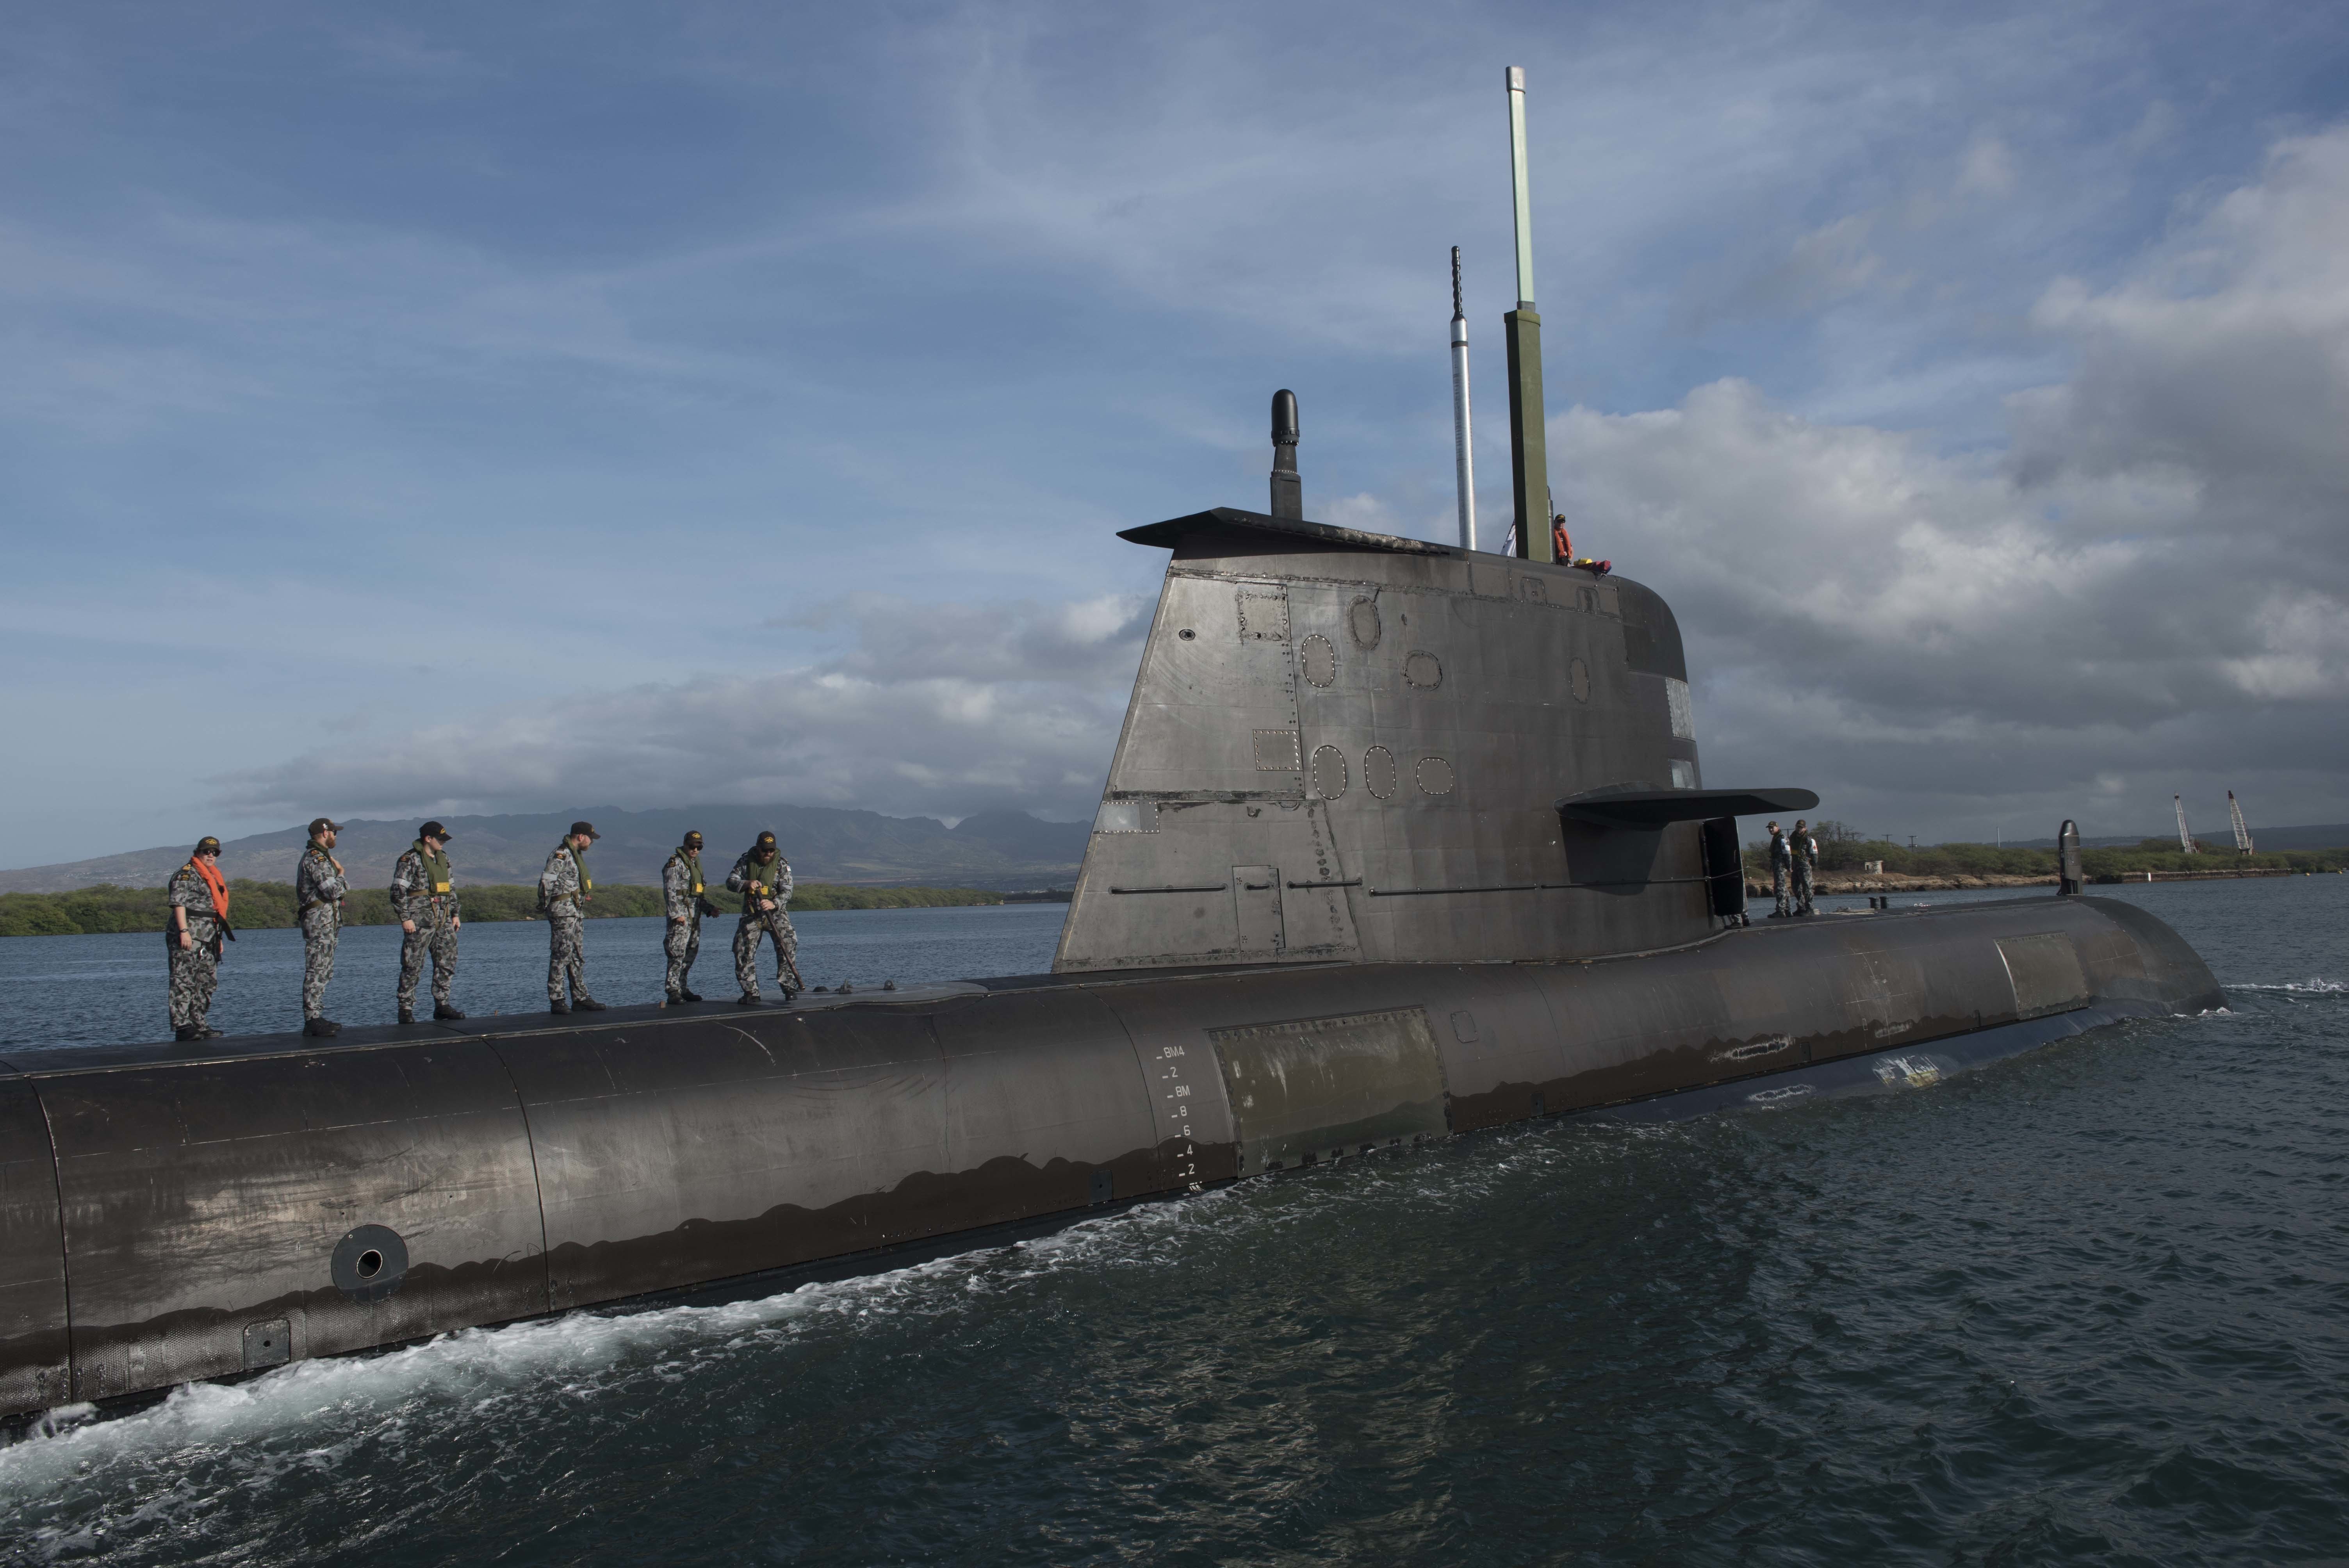 Австралийская подводная лодка HMAS Rankin (SSG 78), участвующая в учении  RIMPAC 2018, фото сделано 17 июля 2018 года в ВМБ Pearl Harbor, Гавайи